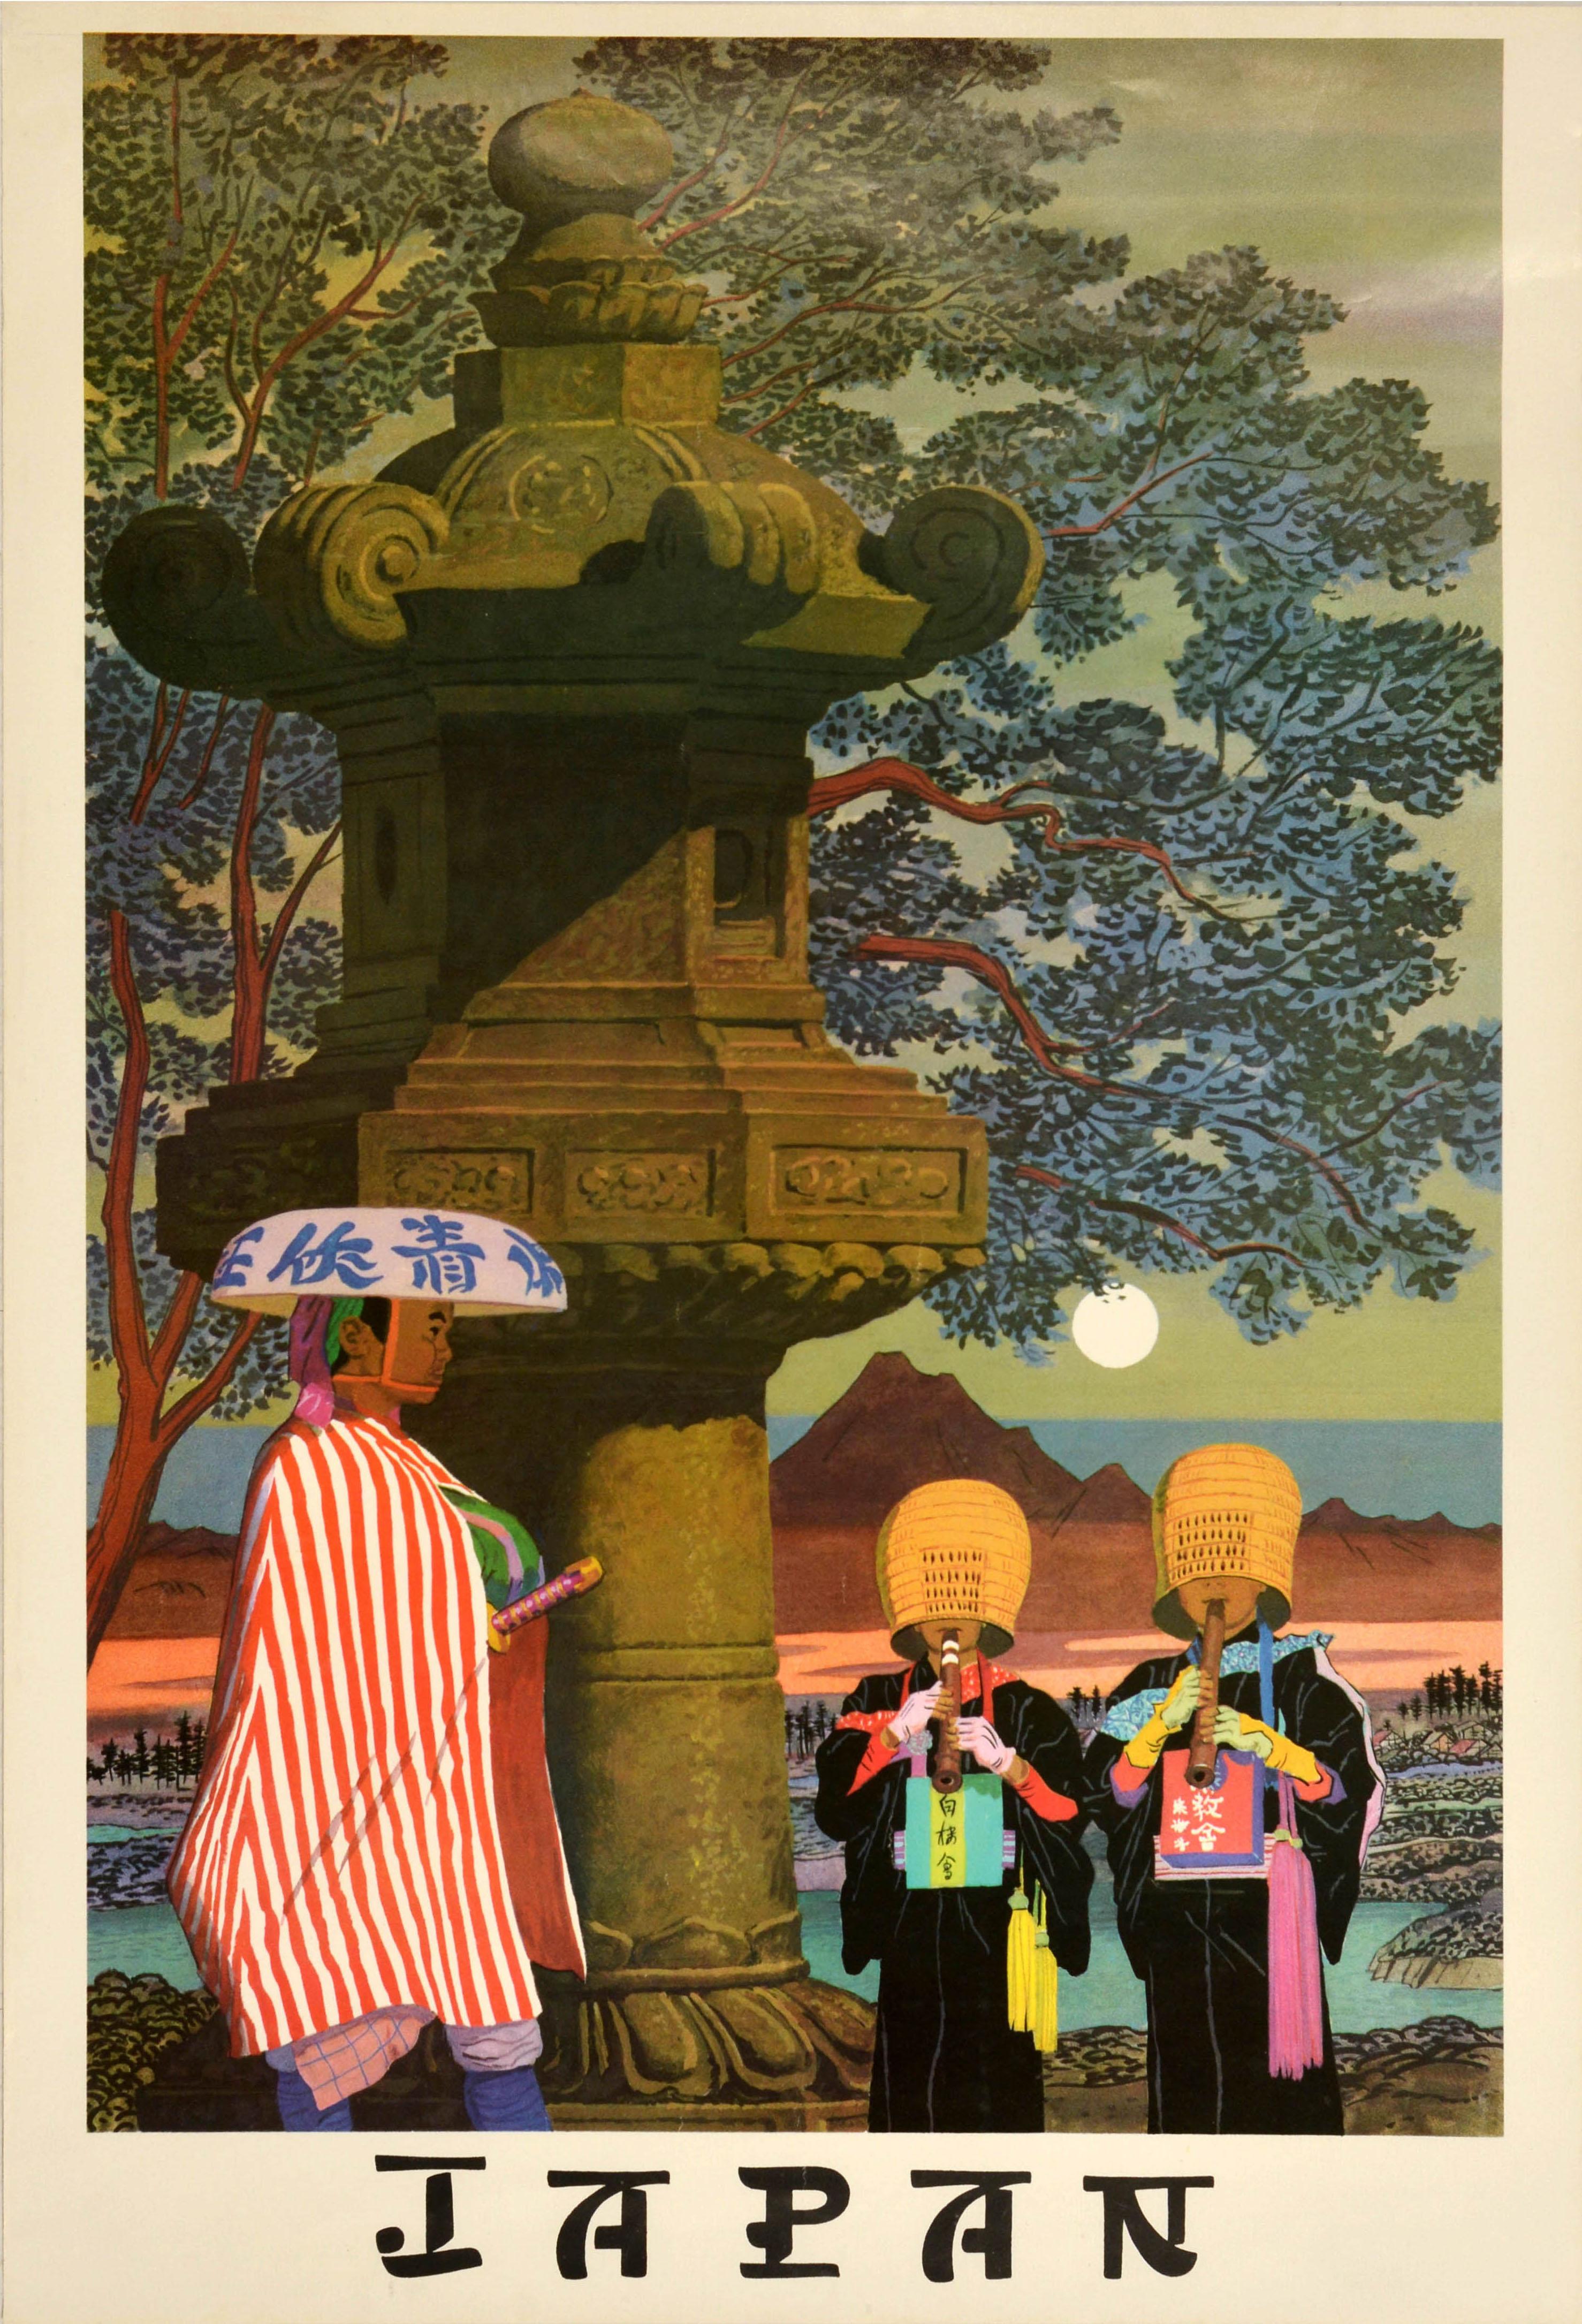 Original Vintage Travel Poster Japan Ronin Samurai Komuso Zen Buddhism Monks